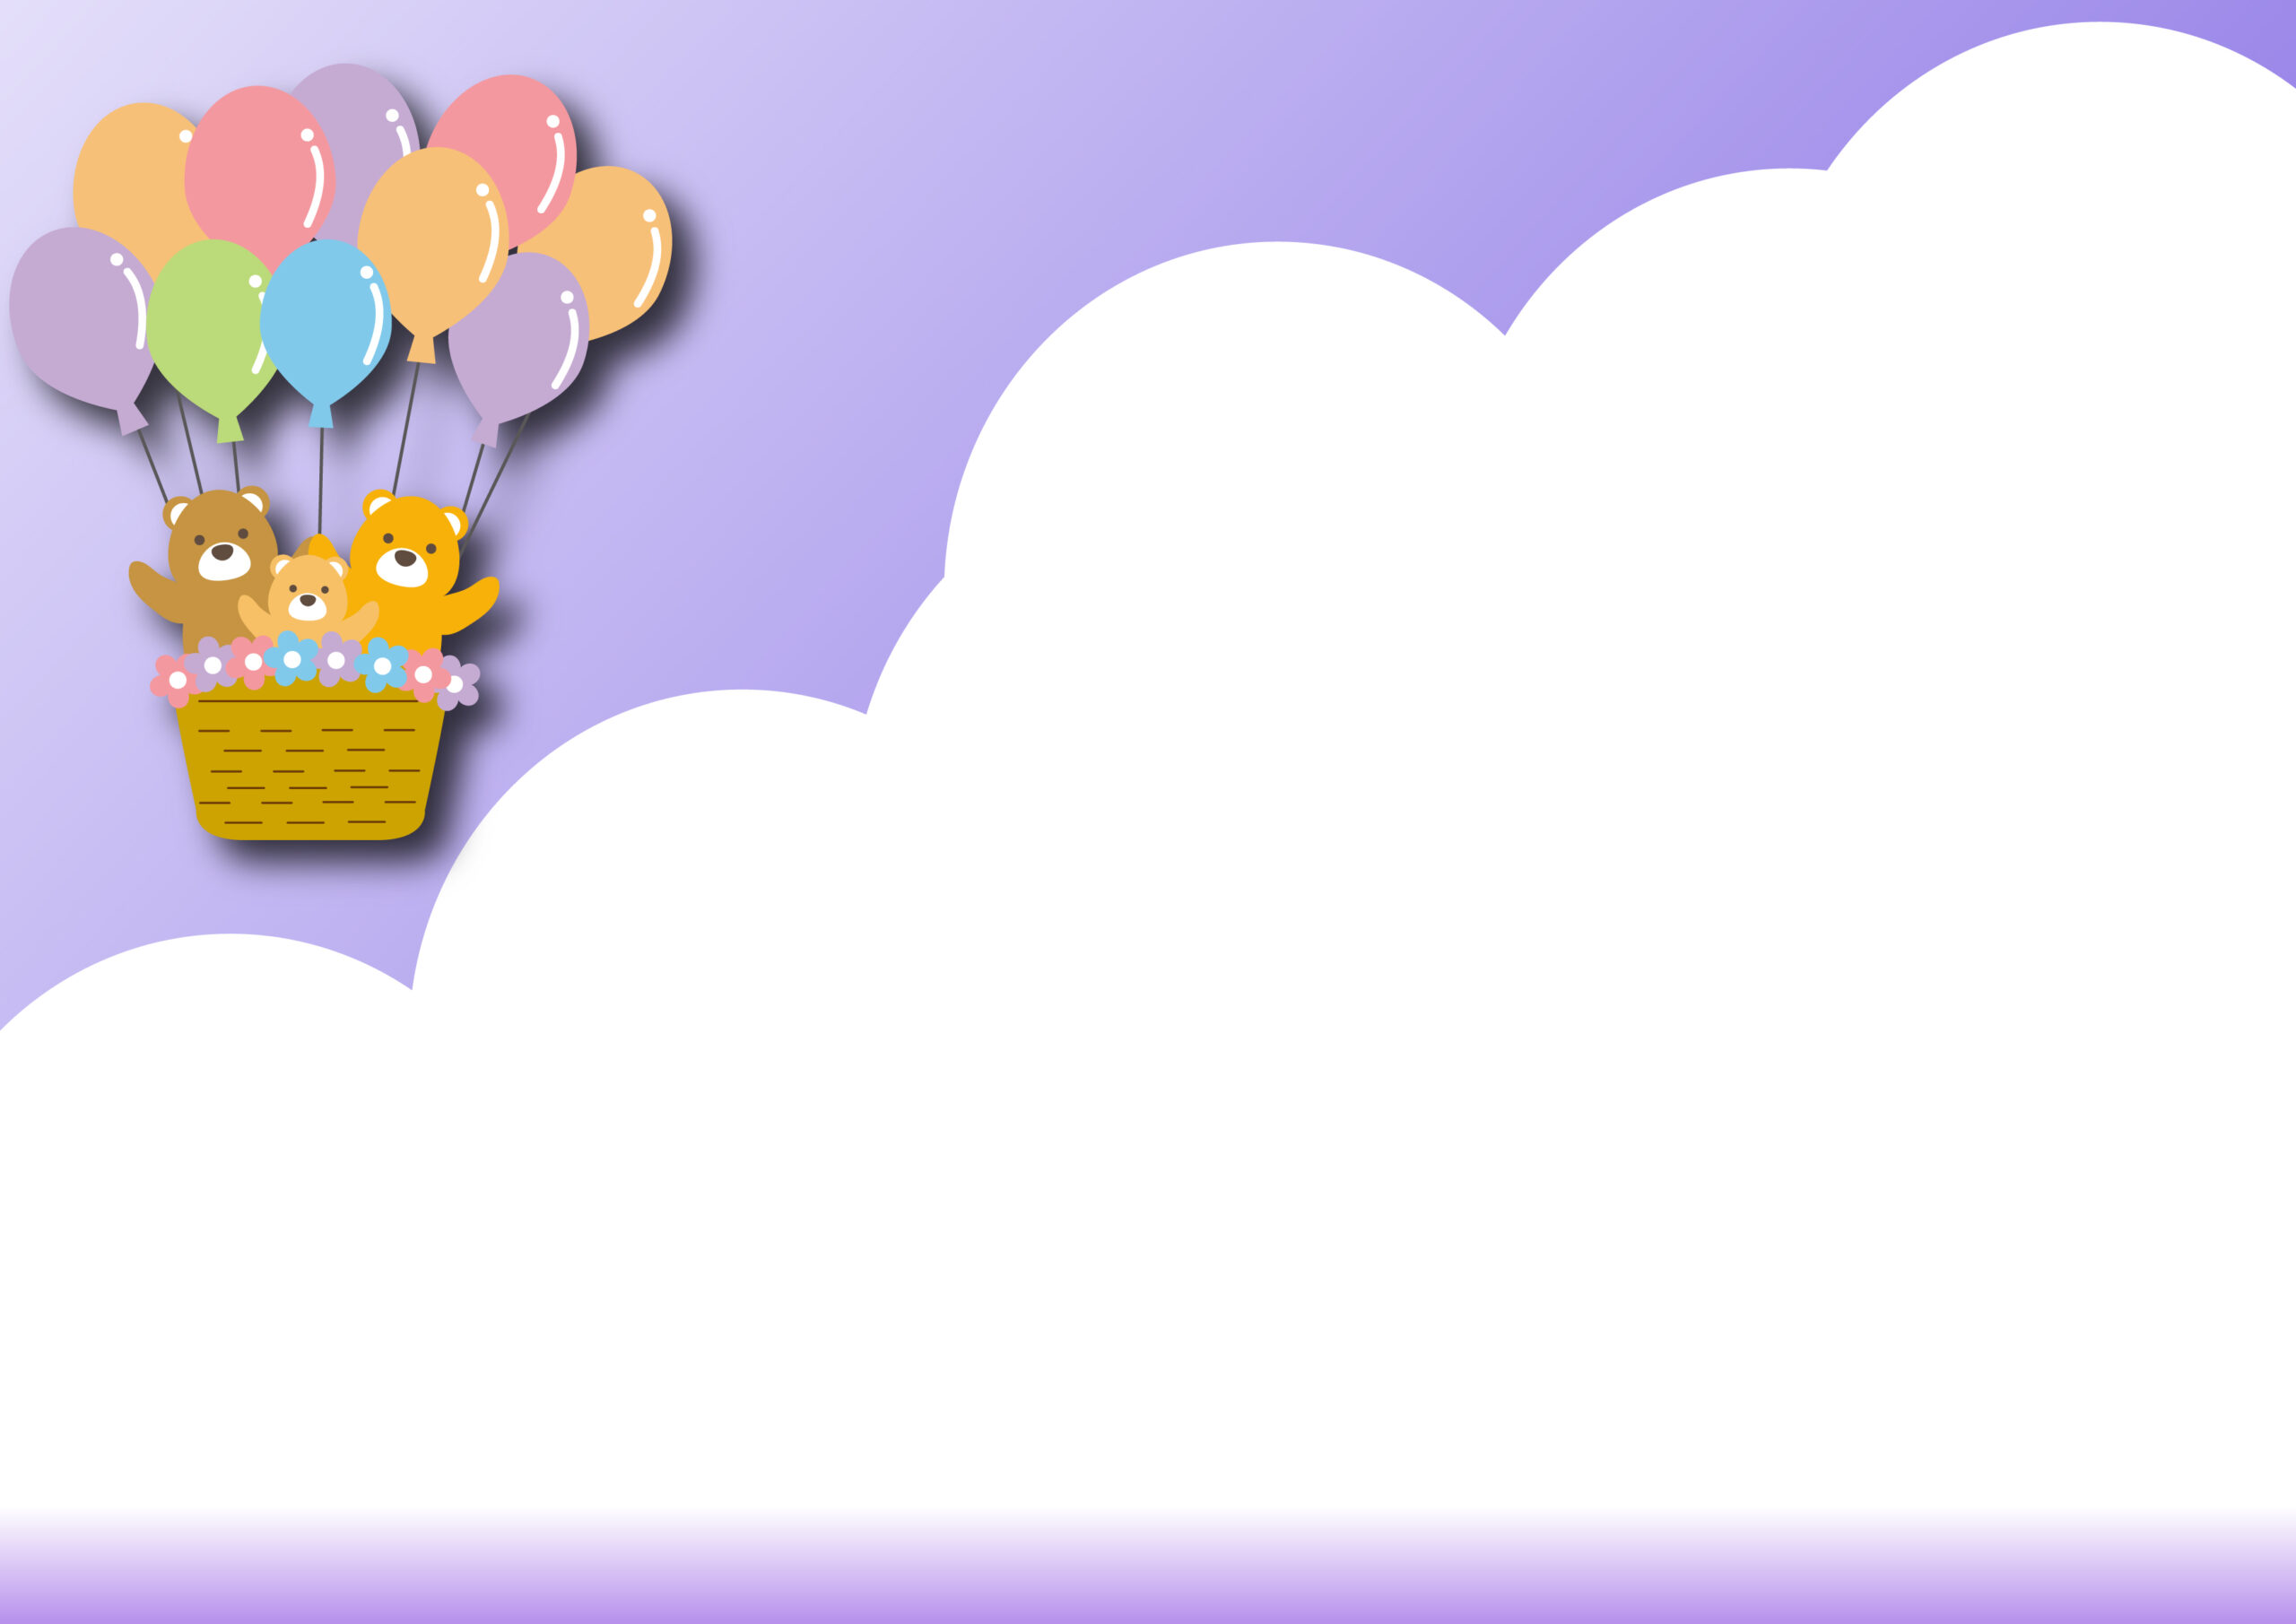 気球や風船、動物をテーマにしたイベントのポスターやチラシ、POP作成におすすめデザインのフレーム！空を旅するクマの親子がかわいい♪WEBサイトに掲示する画像作成にも便利な飾り枠の素材となっております。ダウンロード：JPGA4サイ